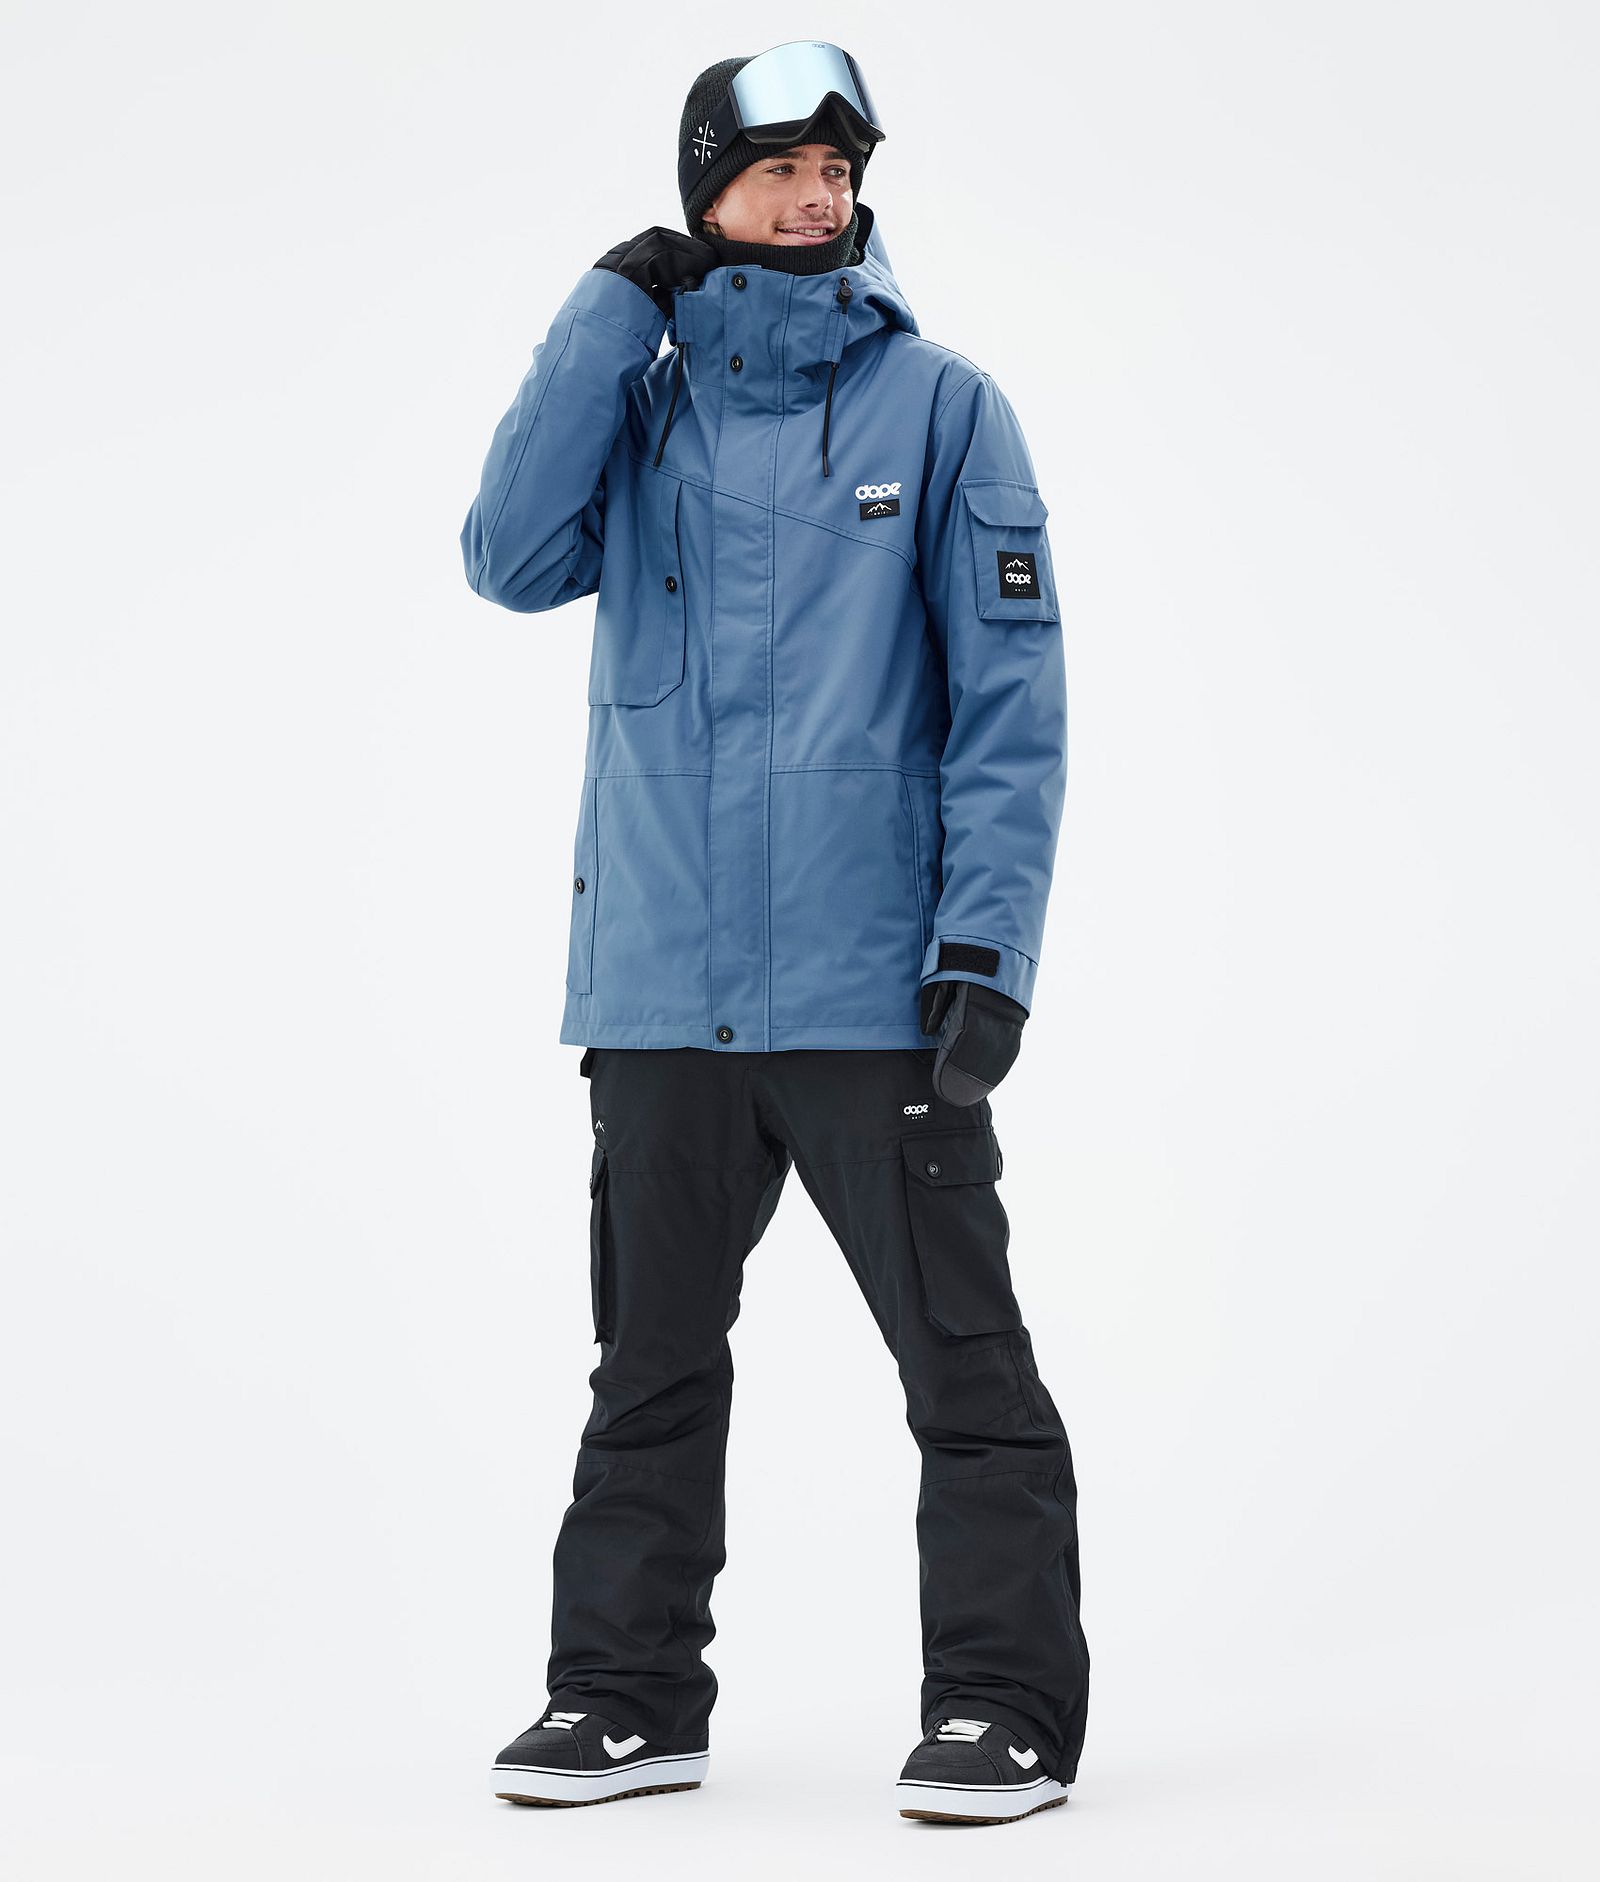 Dope Adept Snowboardový Outfit Pánské Blue Steel/Blackout, Image 1 of 2